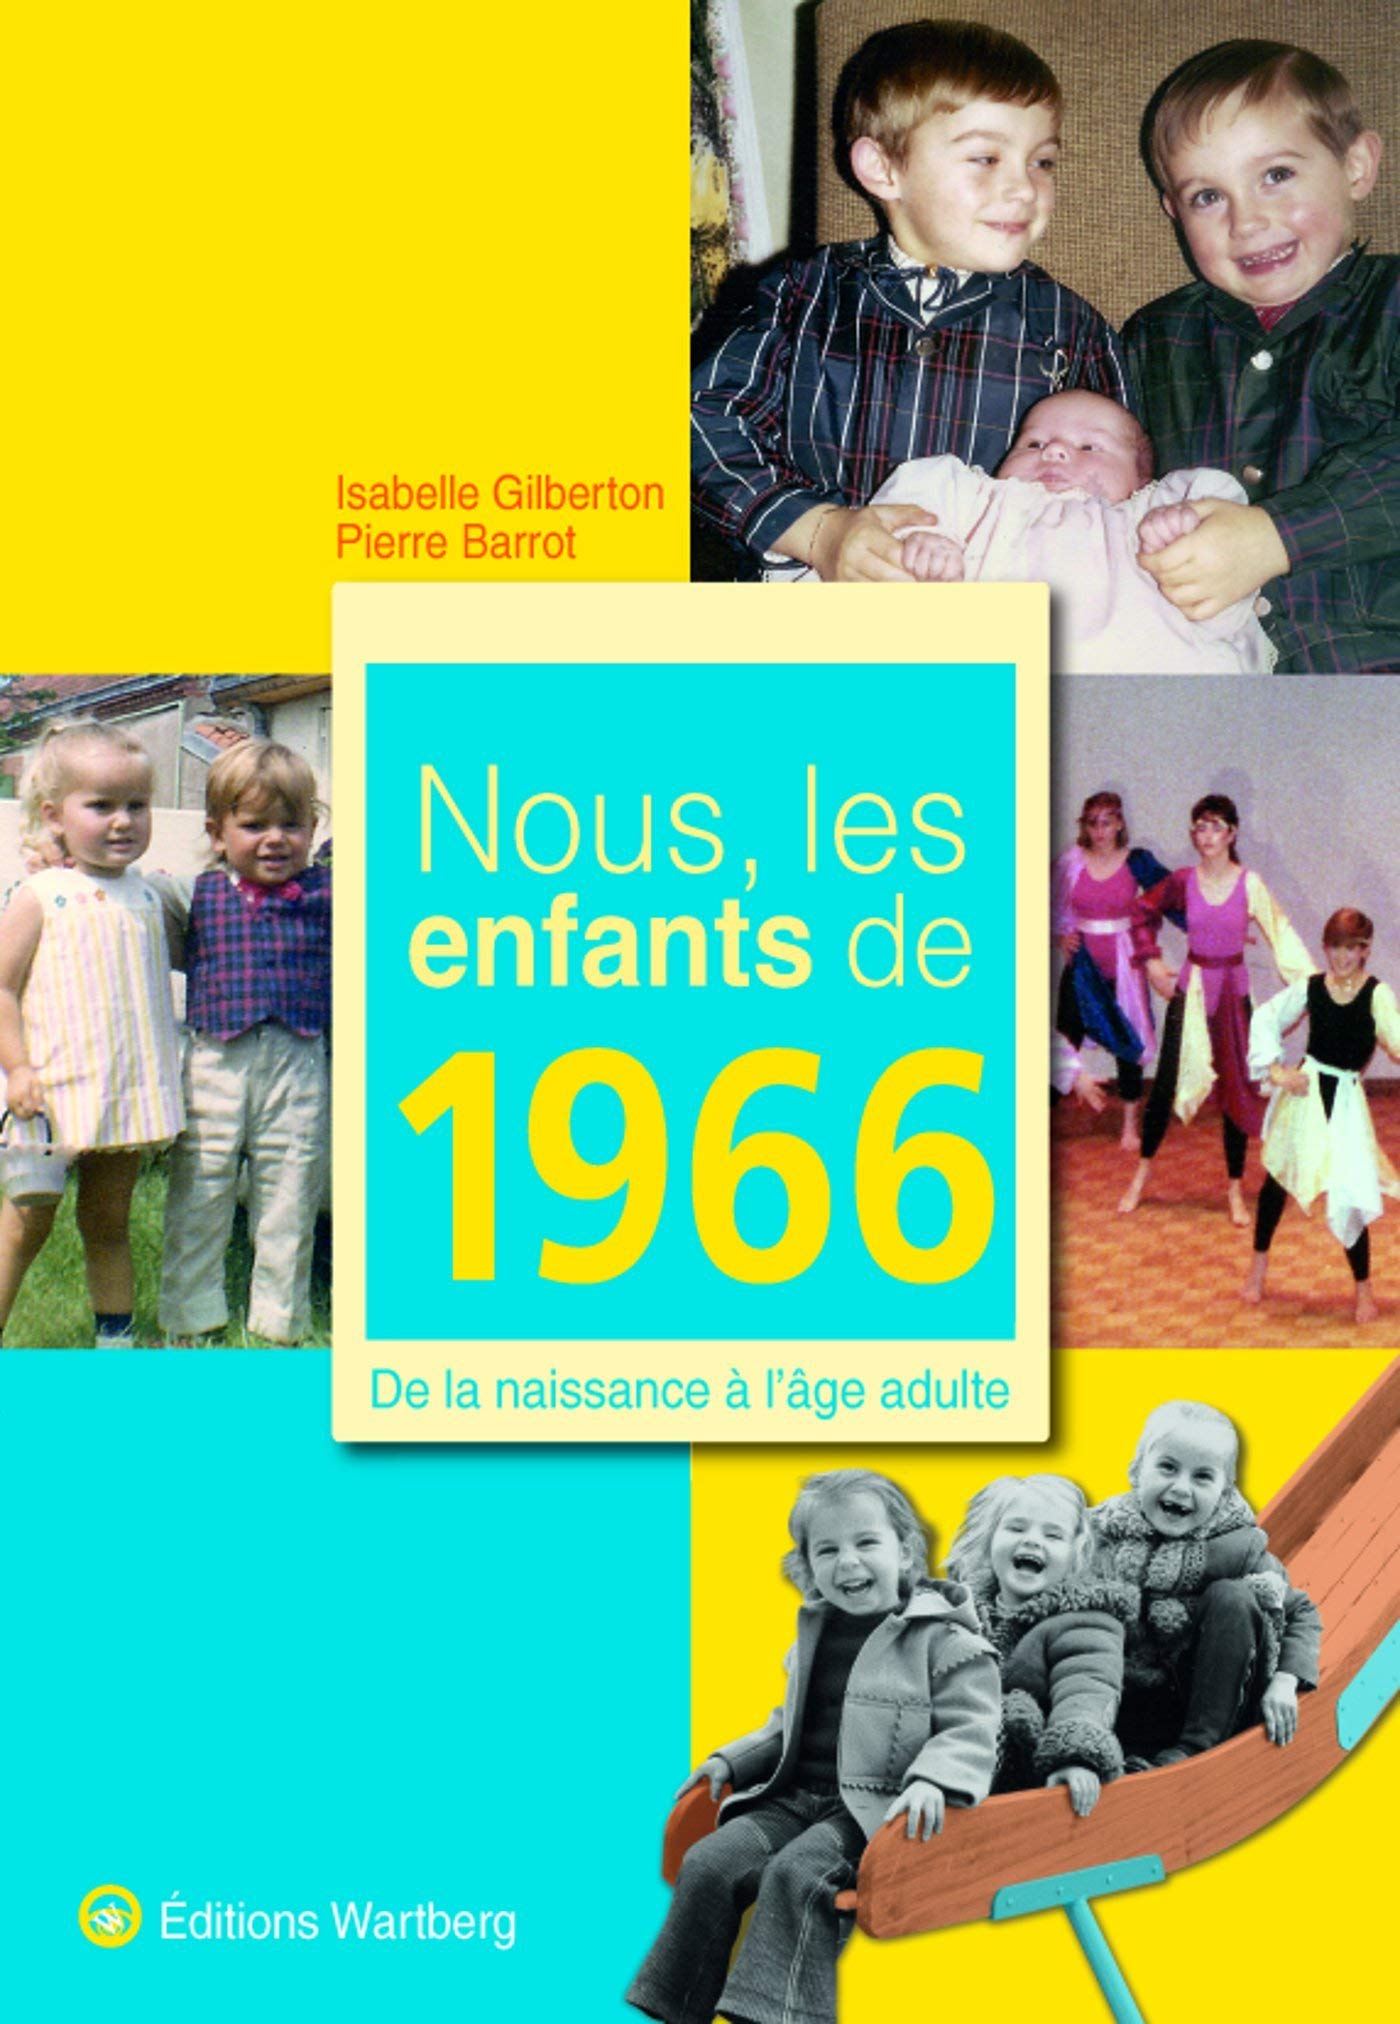 NOUS, LES ENFANTS DE 1966